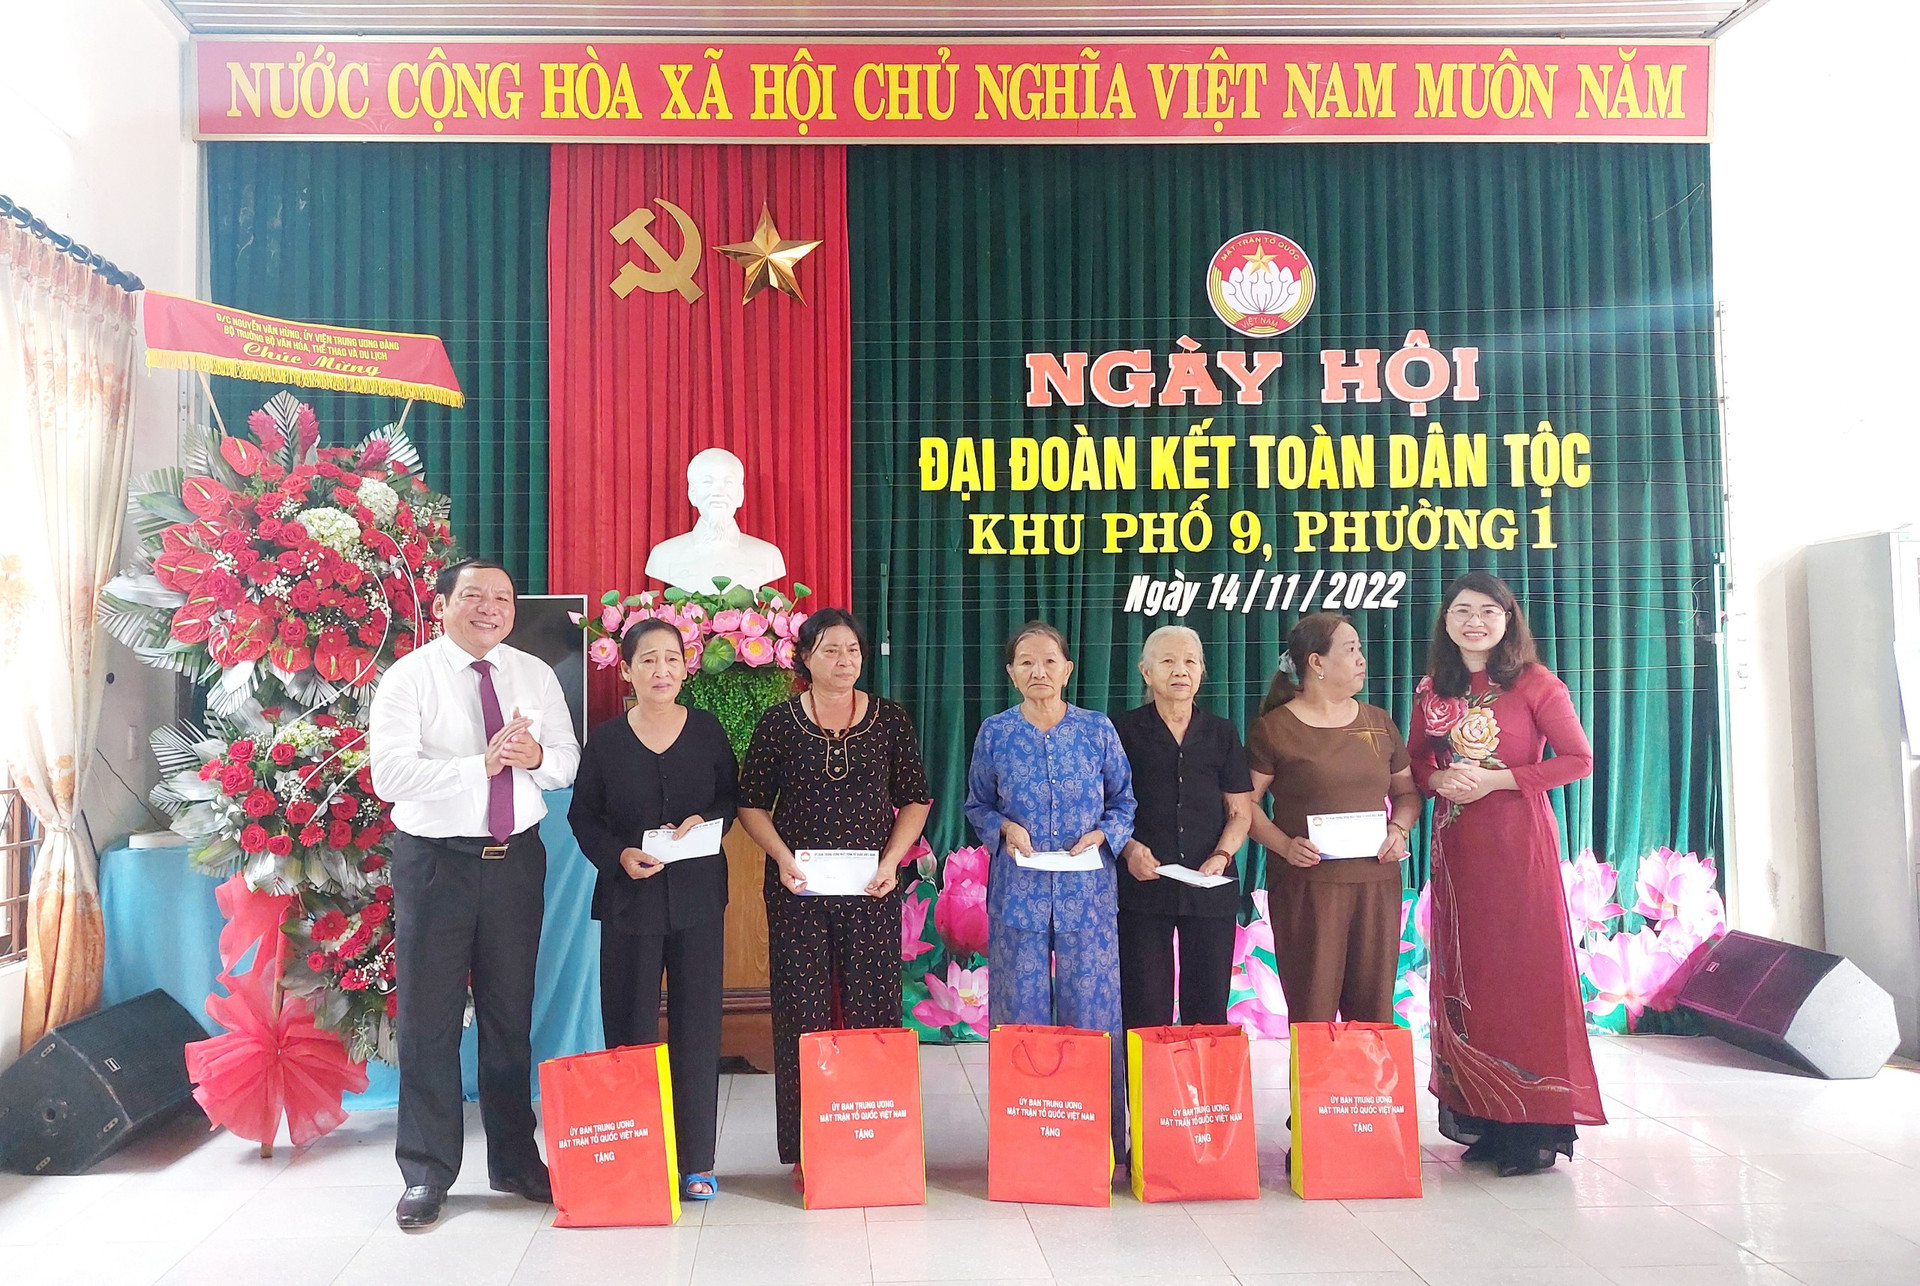 Ông Nguyễn Văn Hùng và bà Nguyễn Ngọc Quỳnh, Phó Trưởng ban Tôn giáo - Ủy ban Trung ương MTTQ Việt Nam (áo dài đỏ) trao quà các phần quà của Ủy ban Trung ương MTTQ Việt Nam đến người dân.